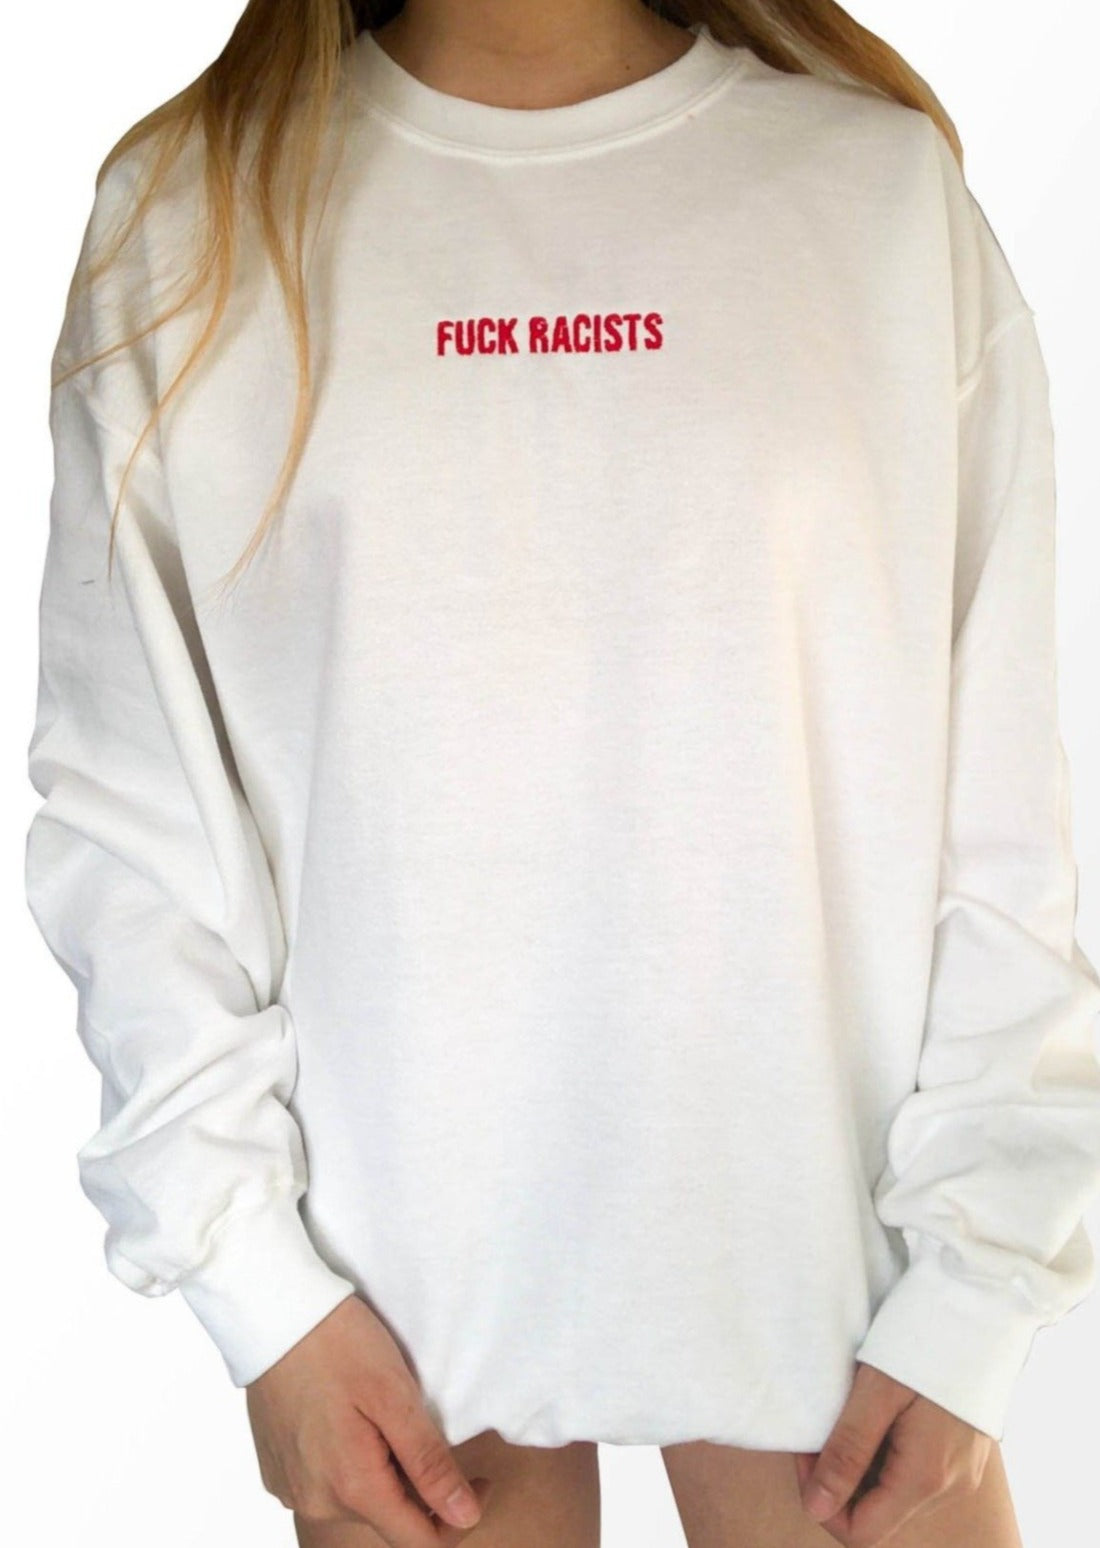 "FUCK RACISTS" Embroidered Sweatshirt